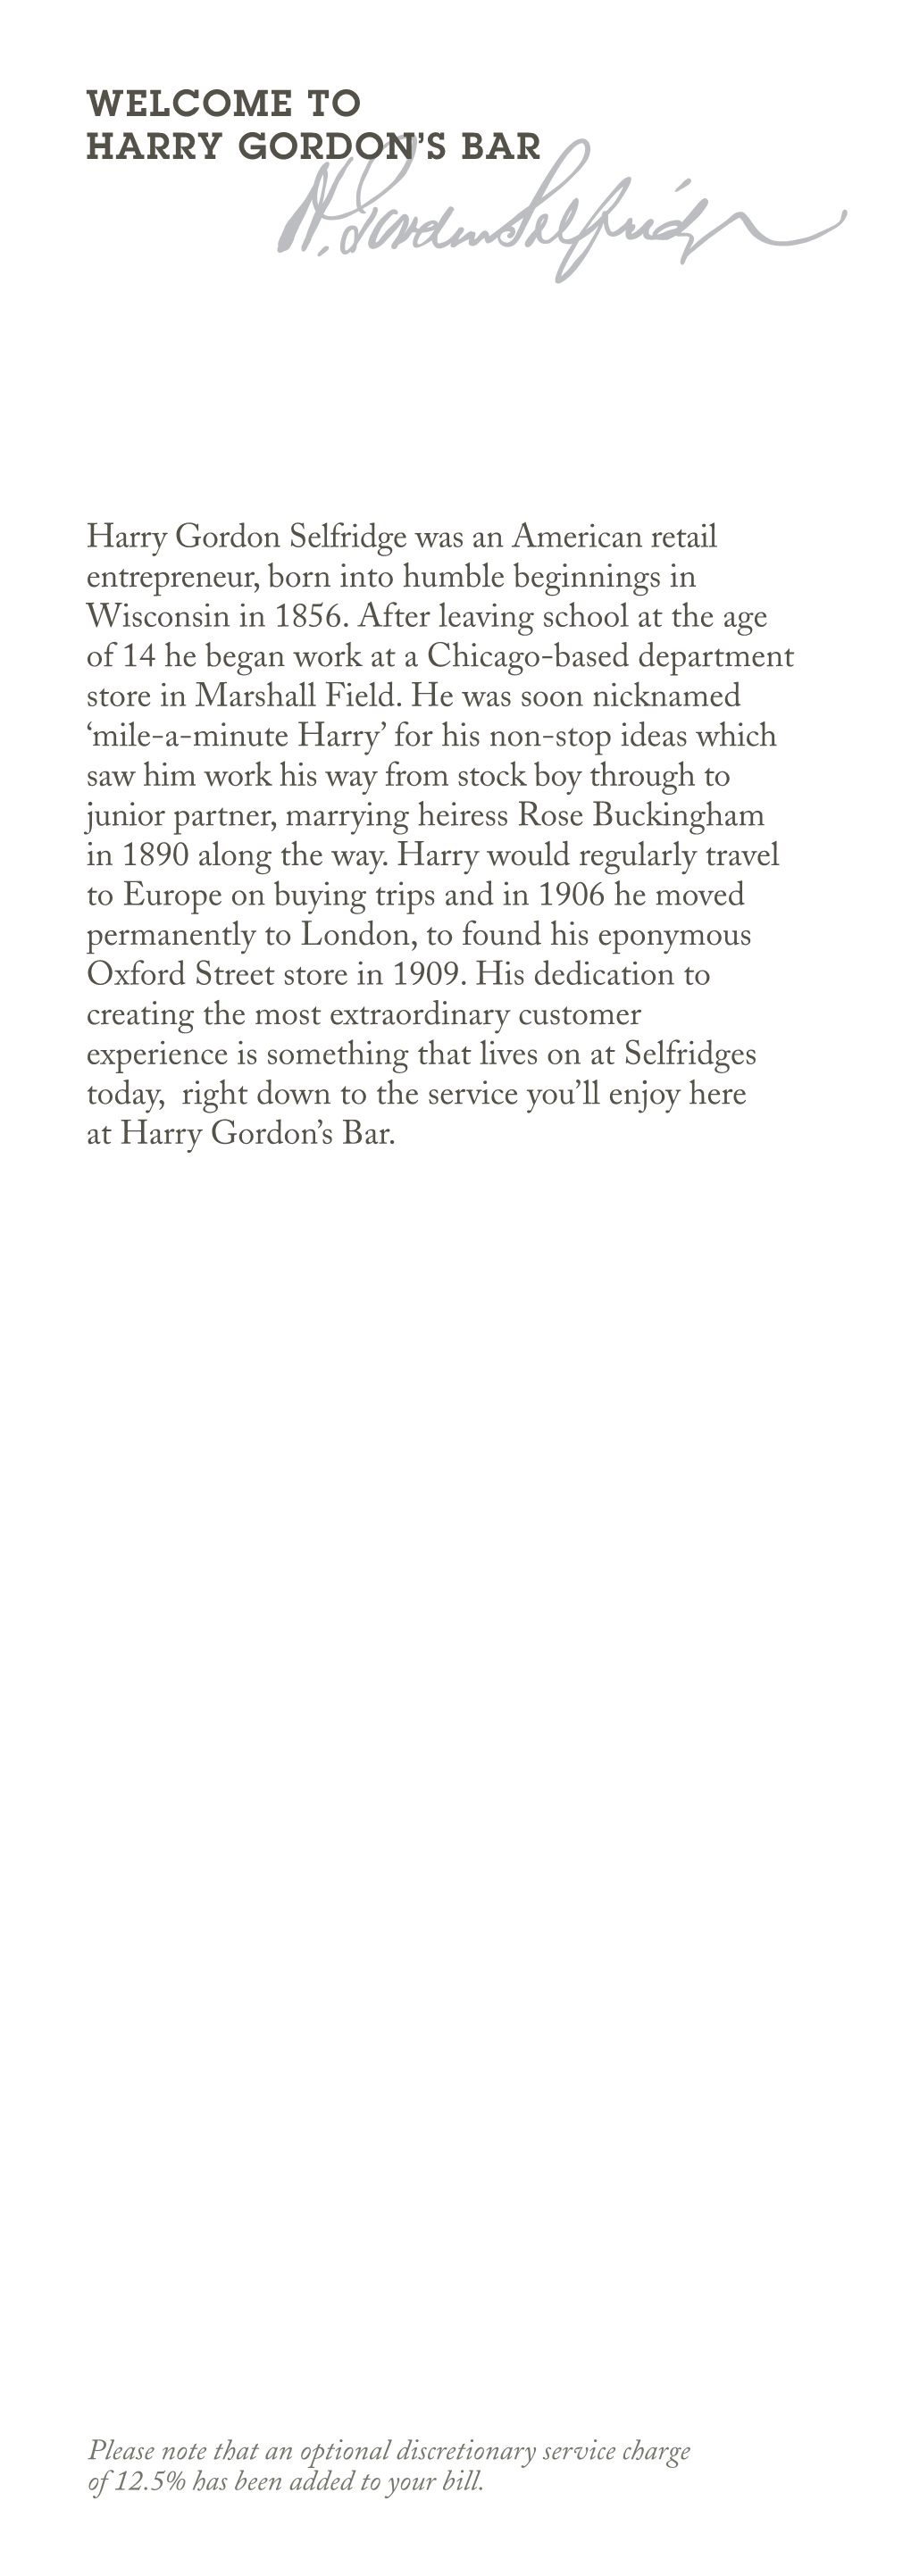 Harry Gordon's